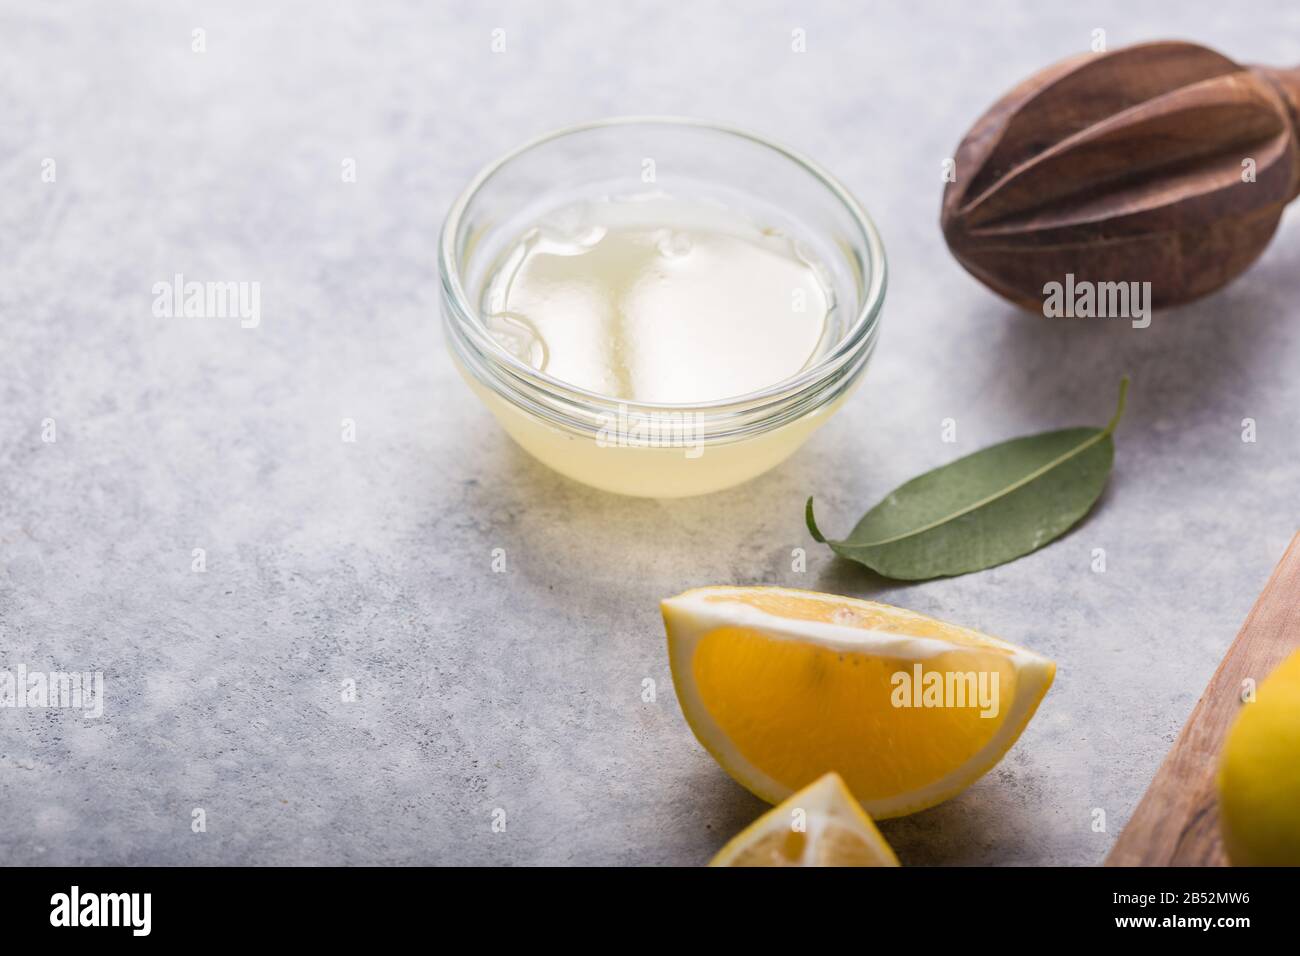 Limone fresco e limoni. Estrattore di succo di agrumi. Il concetto di perdita di peso . Spremiagrumi e spremute di frutta Foto Stock